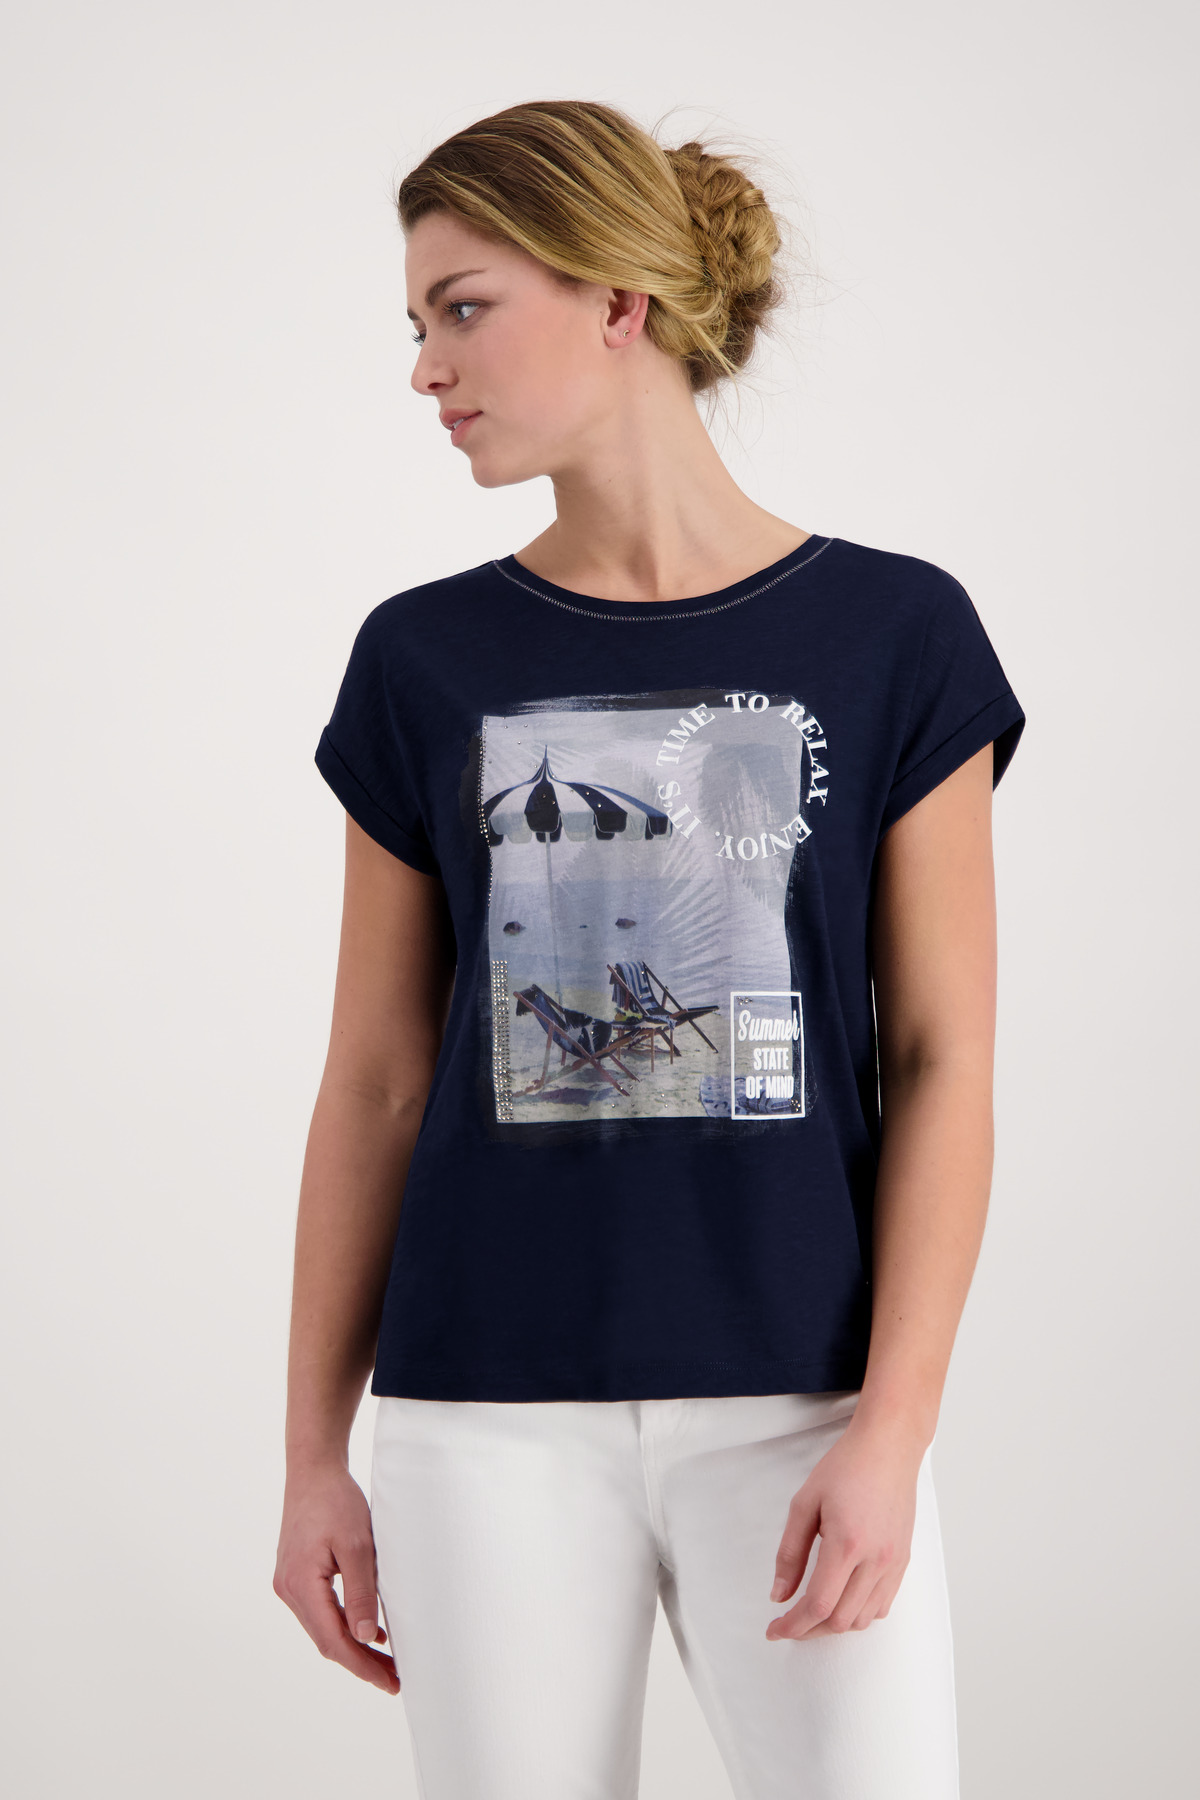 Monari Beach Print Shirt mit Horsthemke - Schrift 3D